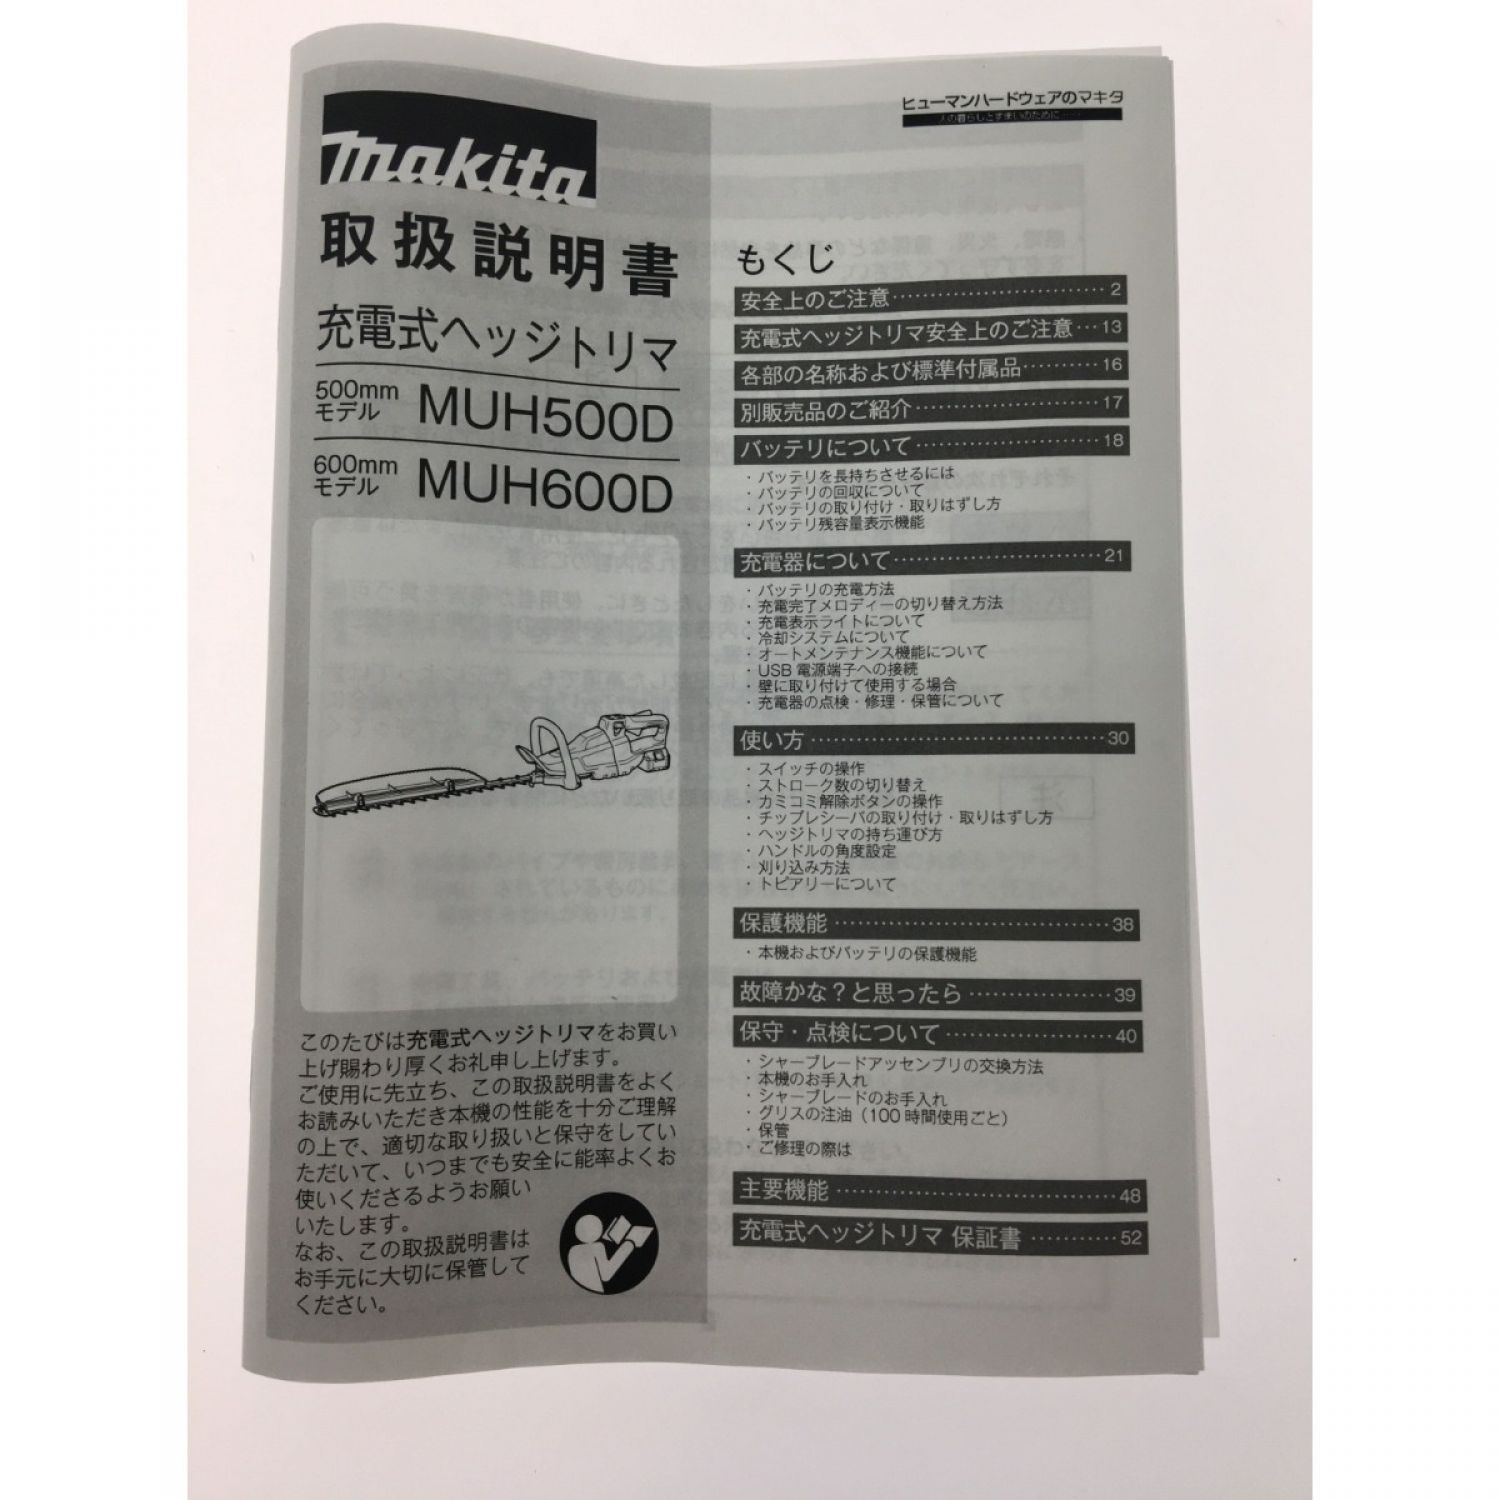  マキタ makita  40V 充電式ヘッジトリマ  刈込み幅500mm  MUH010GZ (片刃式) 本体のみ - 13